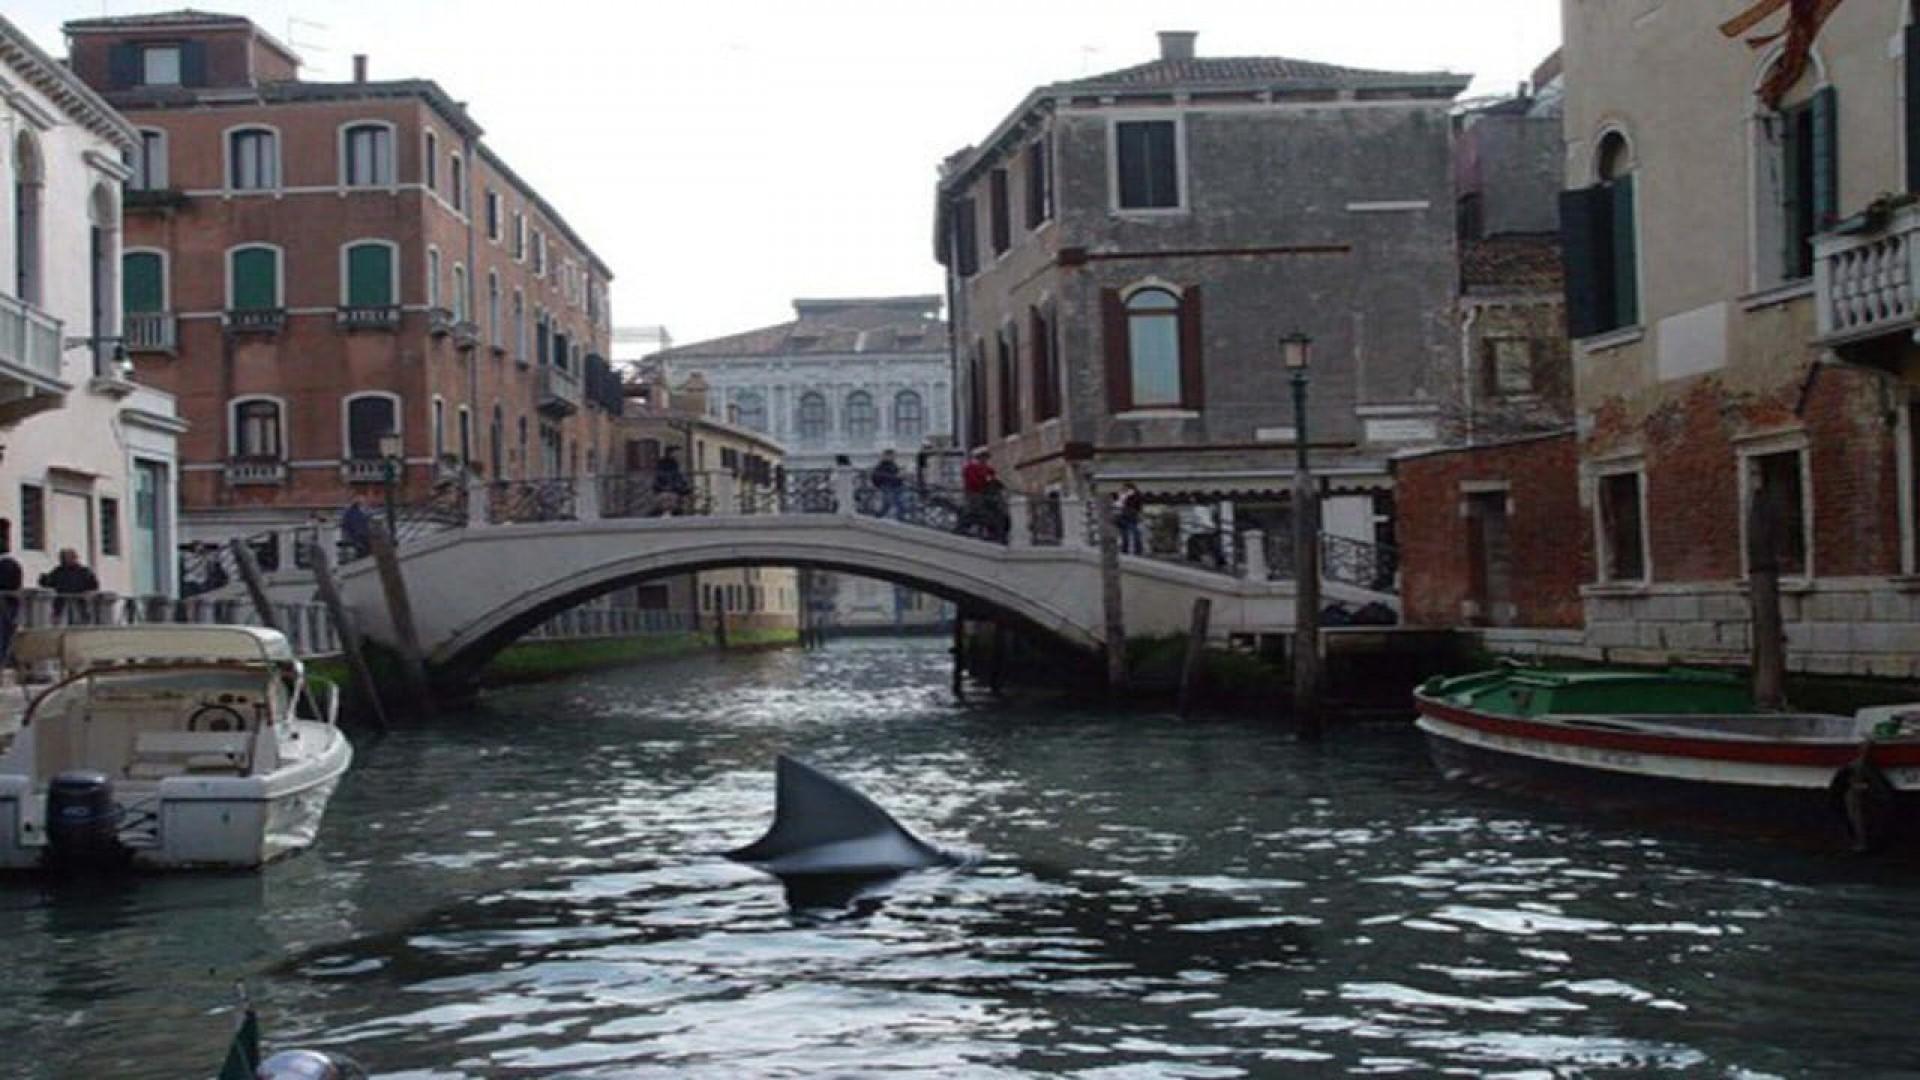 Sharks in Venice